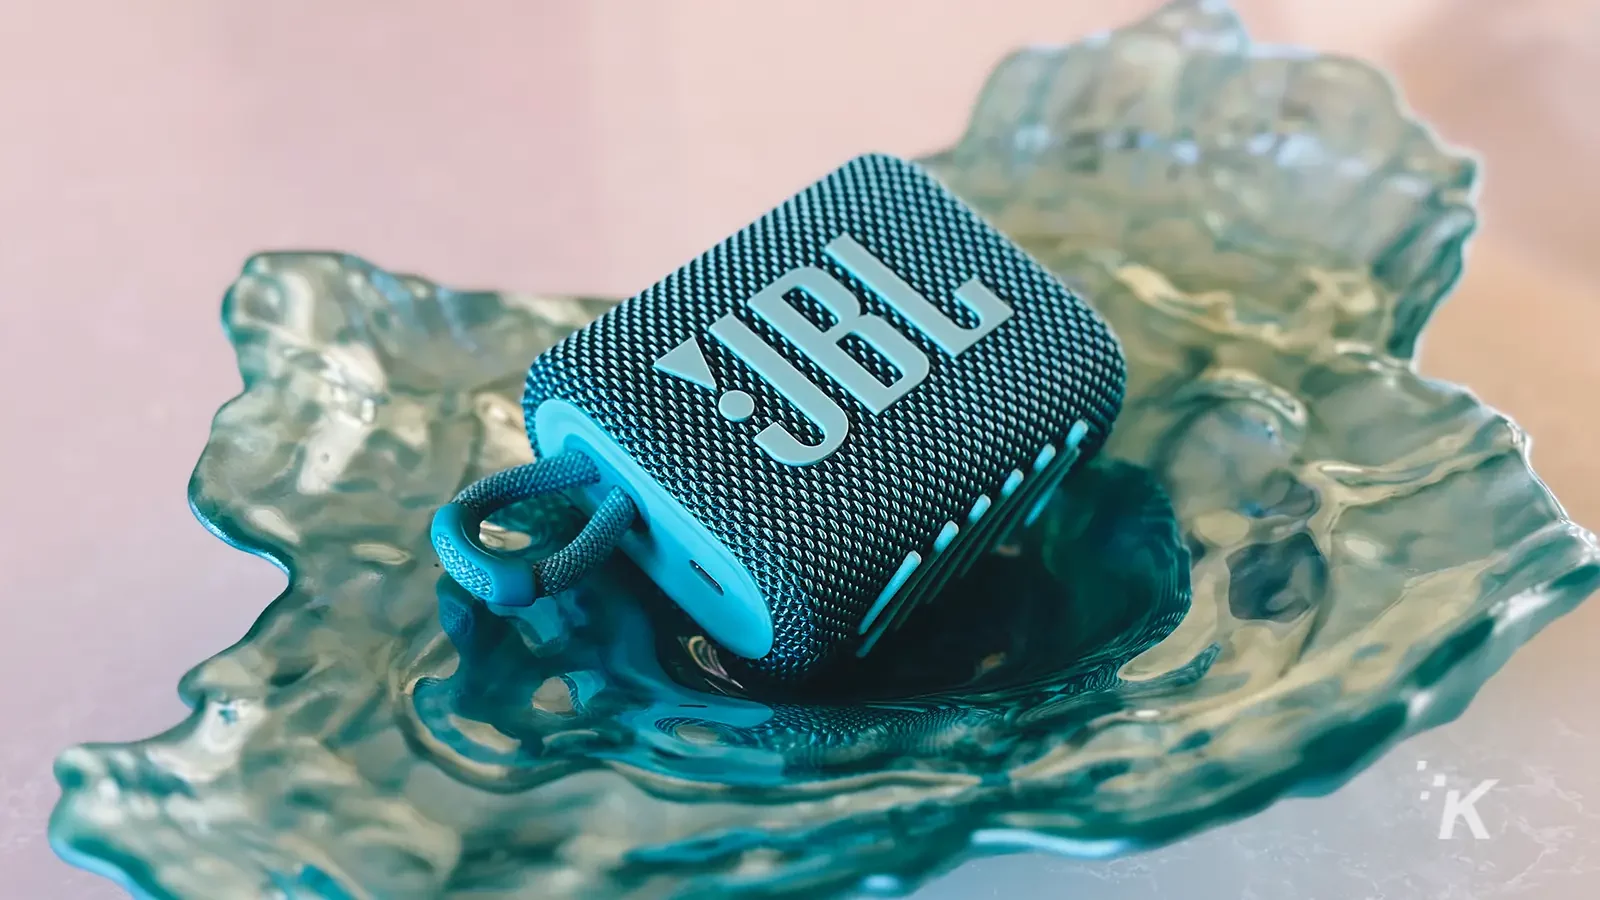 JBL Go 3 tragbarer Lautsprecher in Blaugrün auf einem Tablett